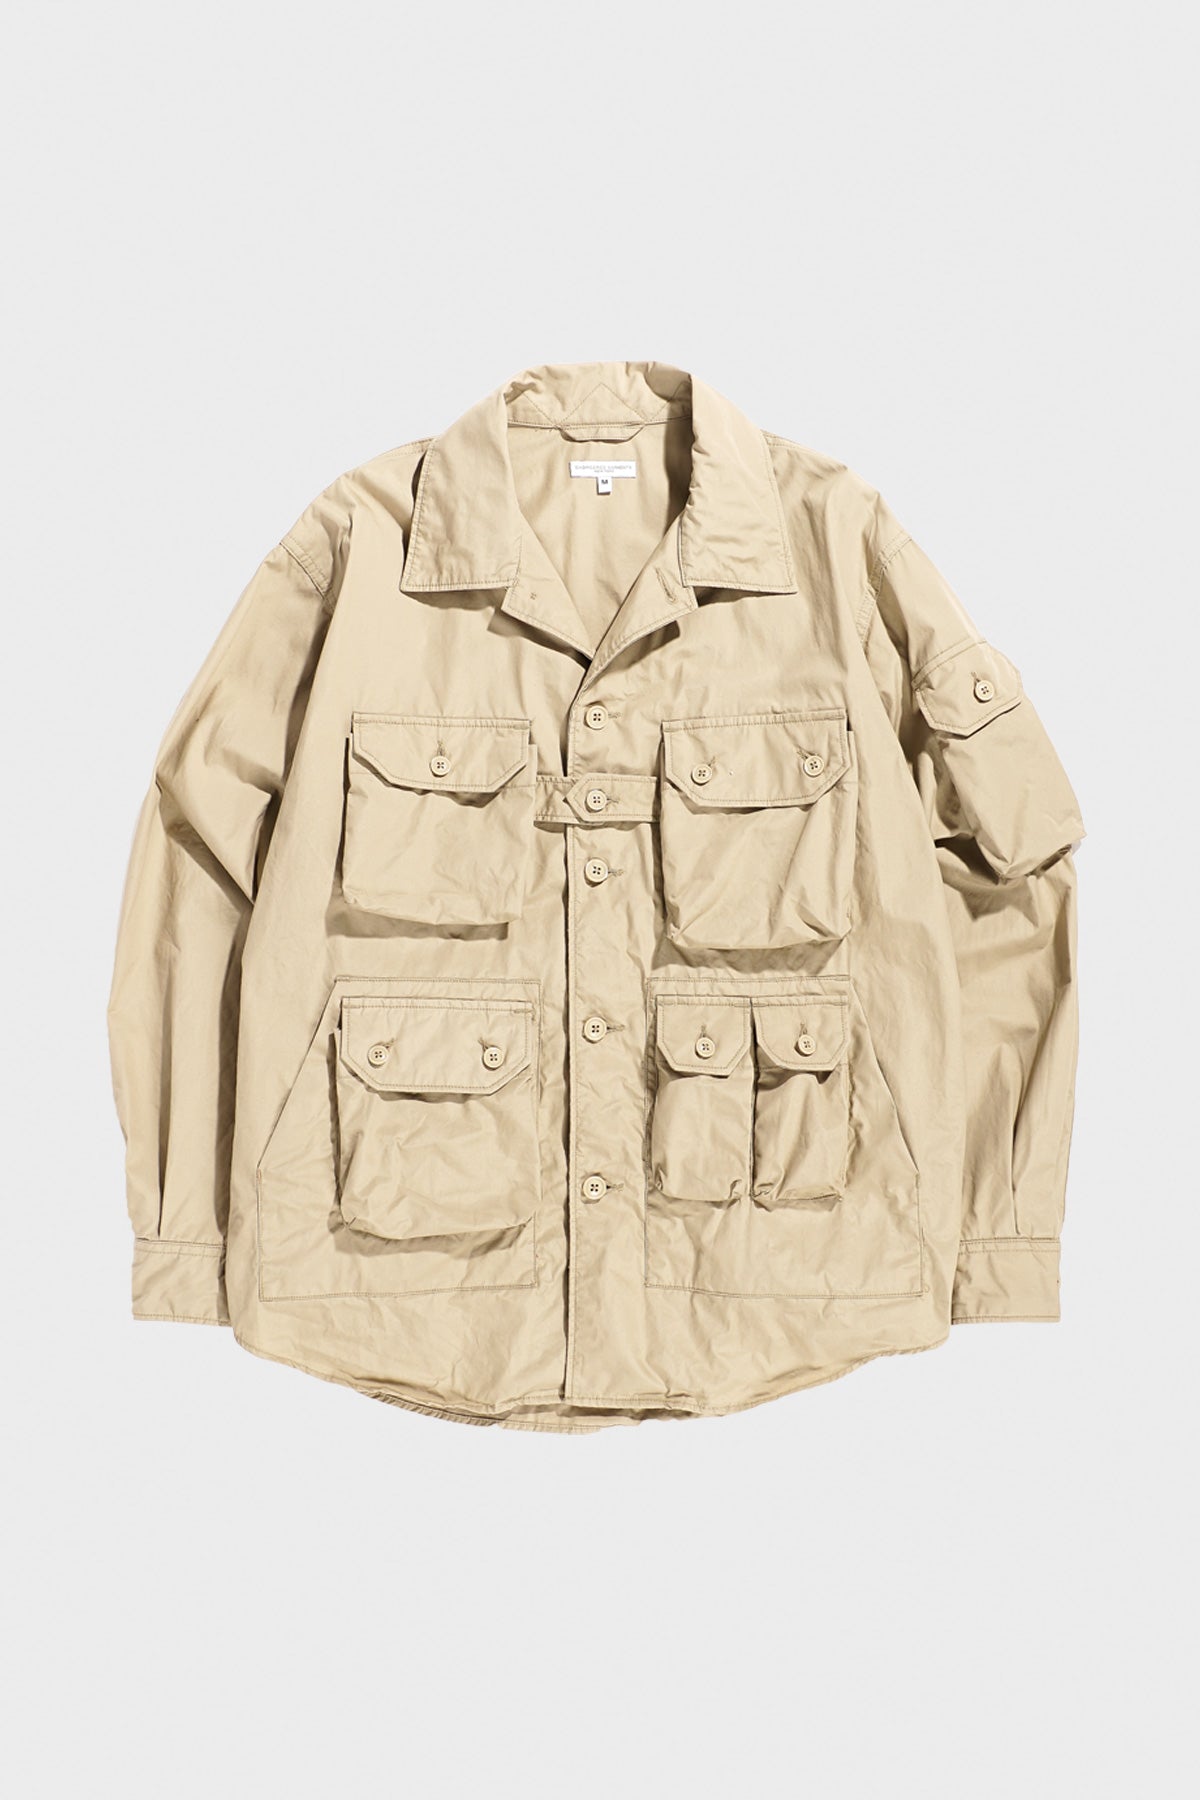 Explorer Shirt Jacket - Khaki Cotton Duracloth Poplin